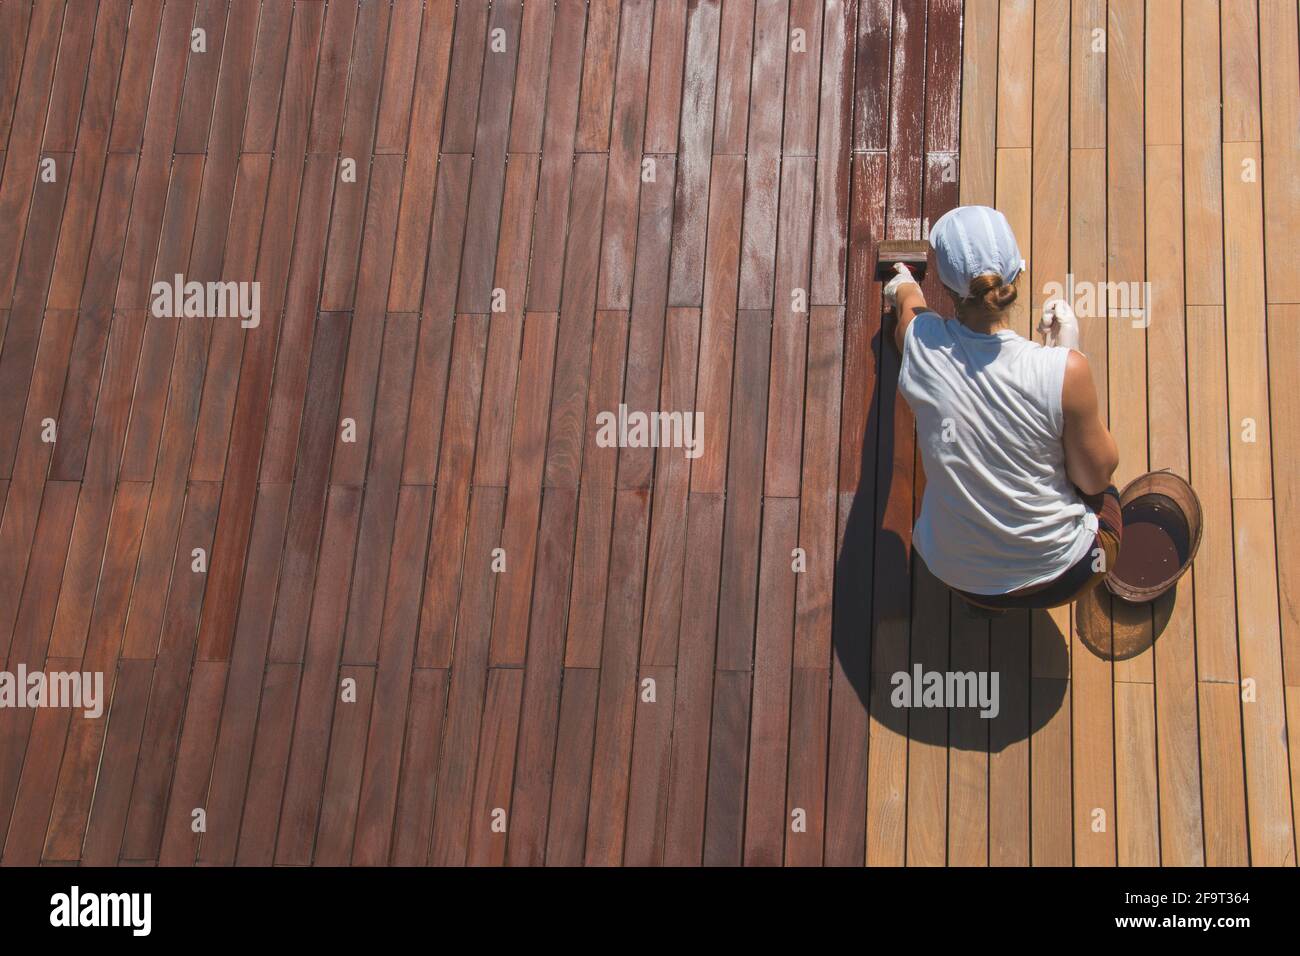 Holzdeck Renovierung Behandlung, die Person, die schützende Holzfleck mit einem Pinsel, Draufsicht der ipe Hartholz-Terrasse Restaurierungsprozess Stockfoto